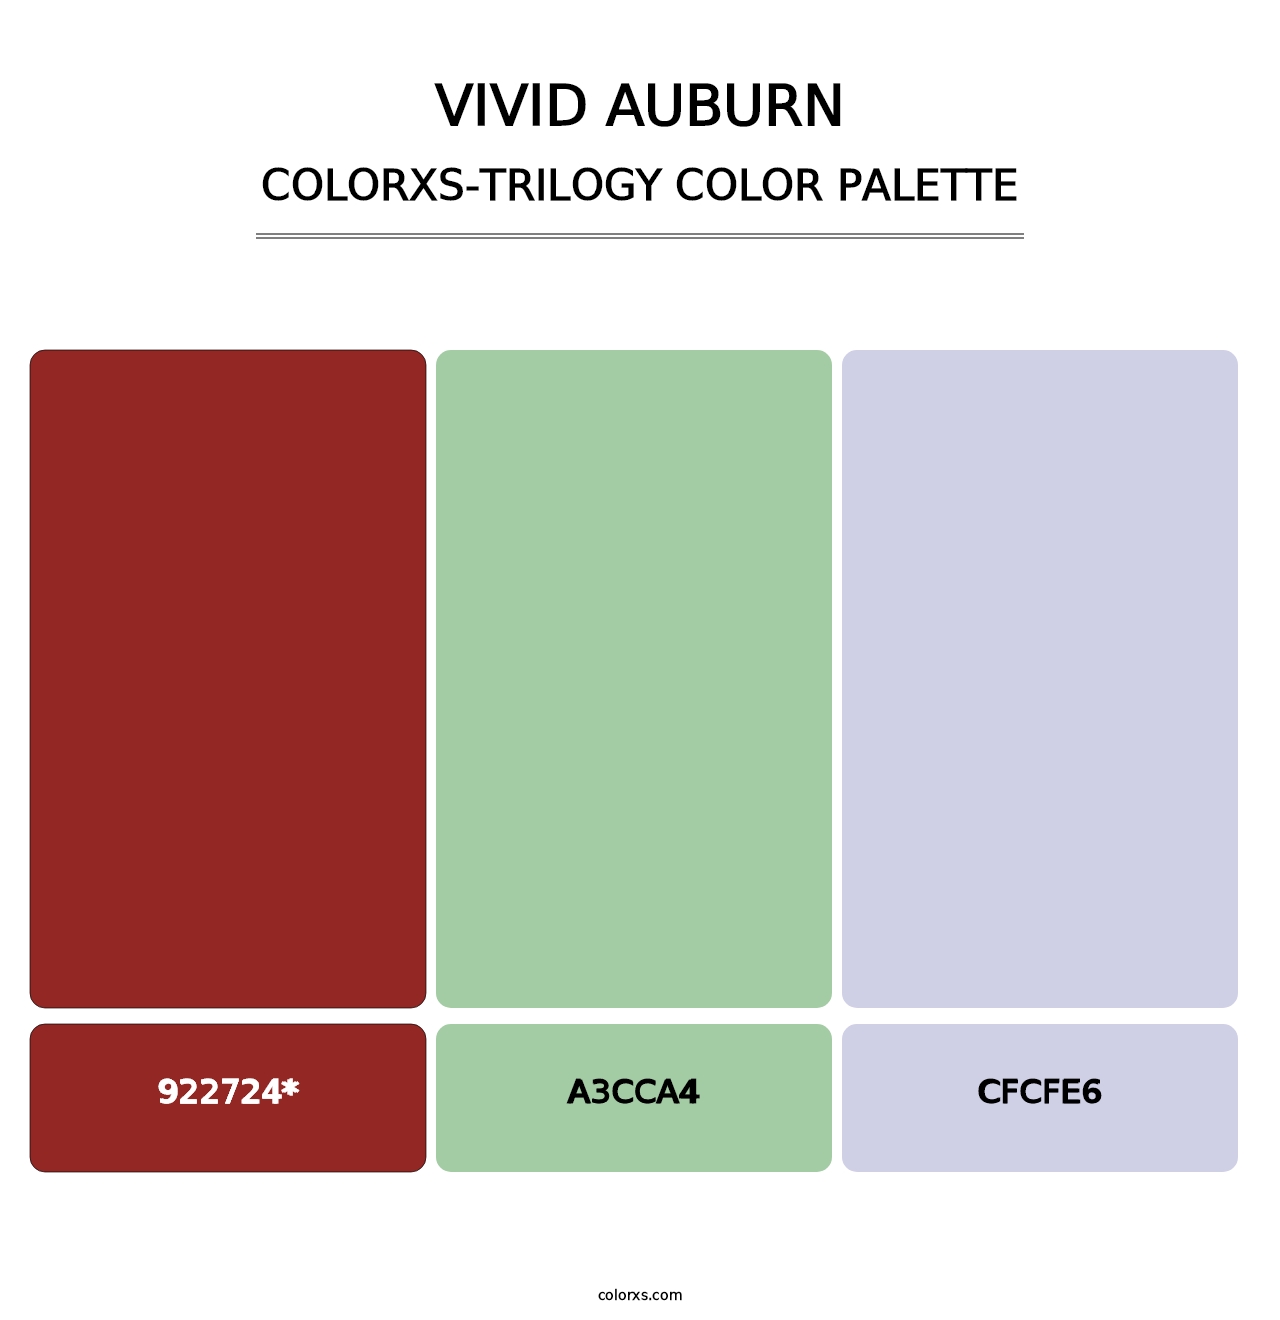 Vivid Auburn - Colorxs Trilogy Palette